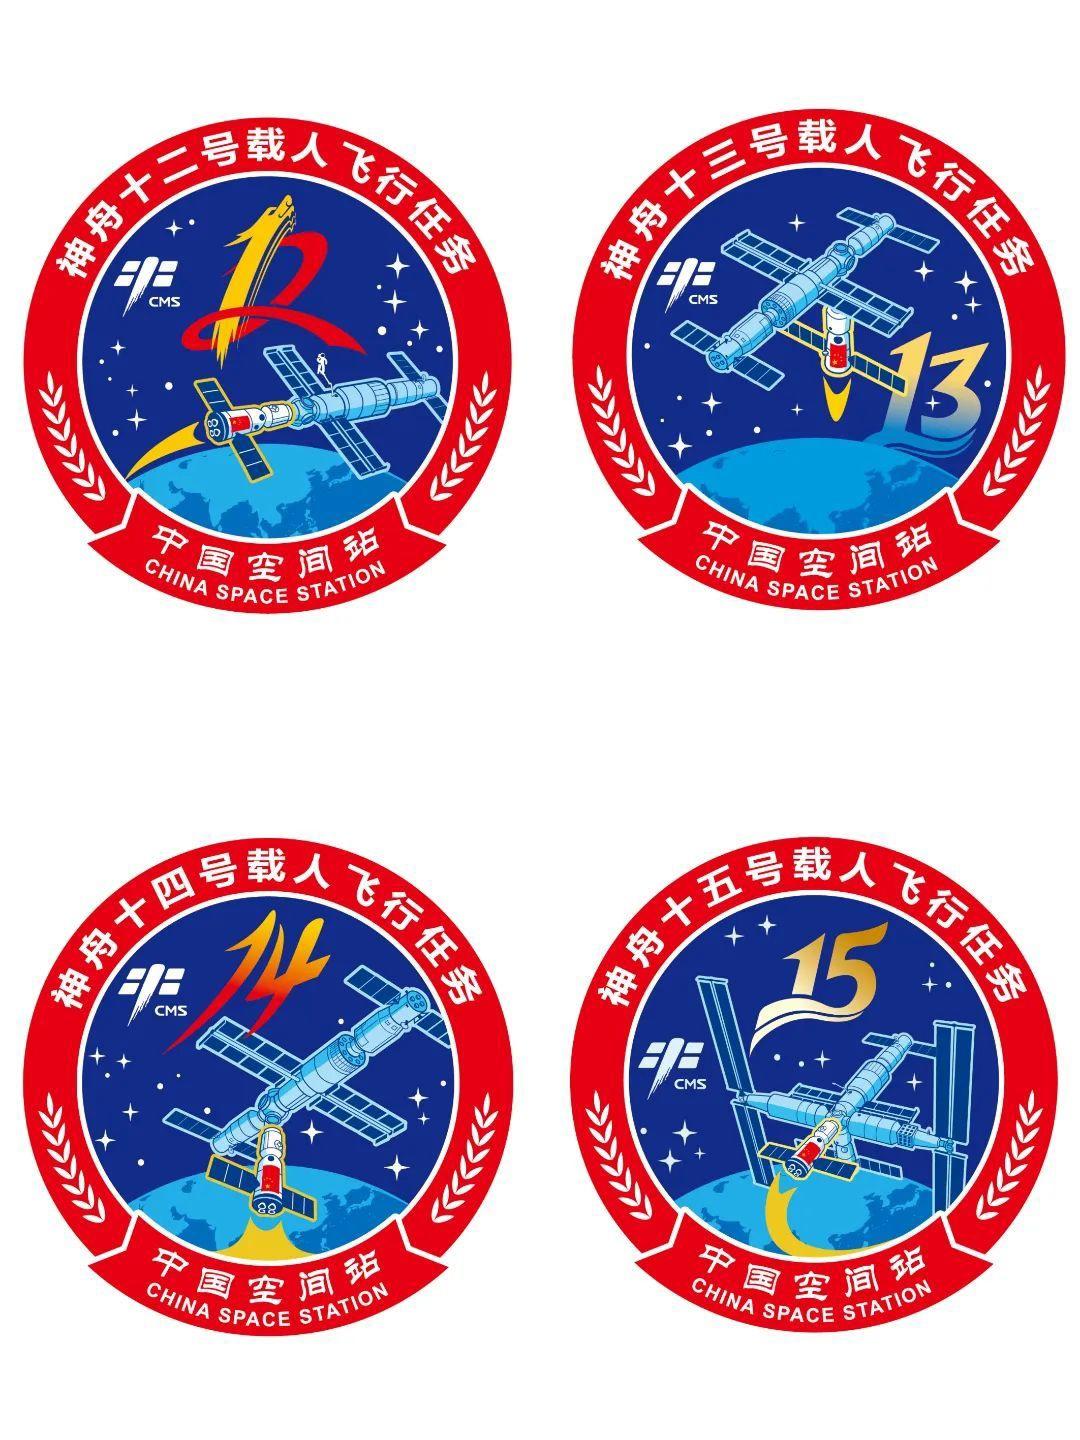 2枚中国空间站任务标识集齐了是怎么回事，关于中国空间站主要标识的新消息。"